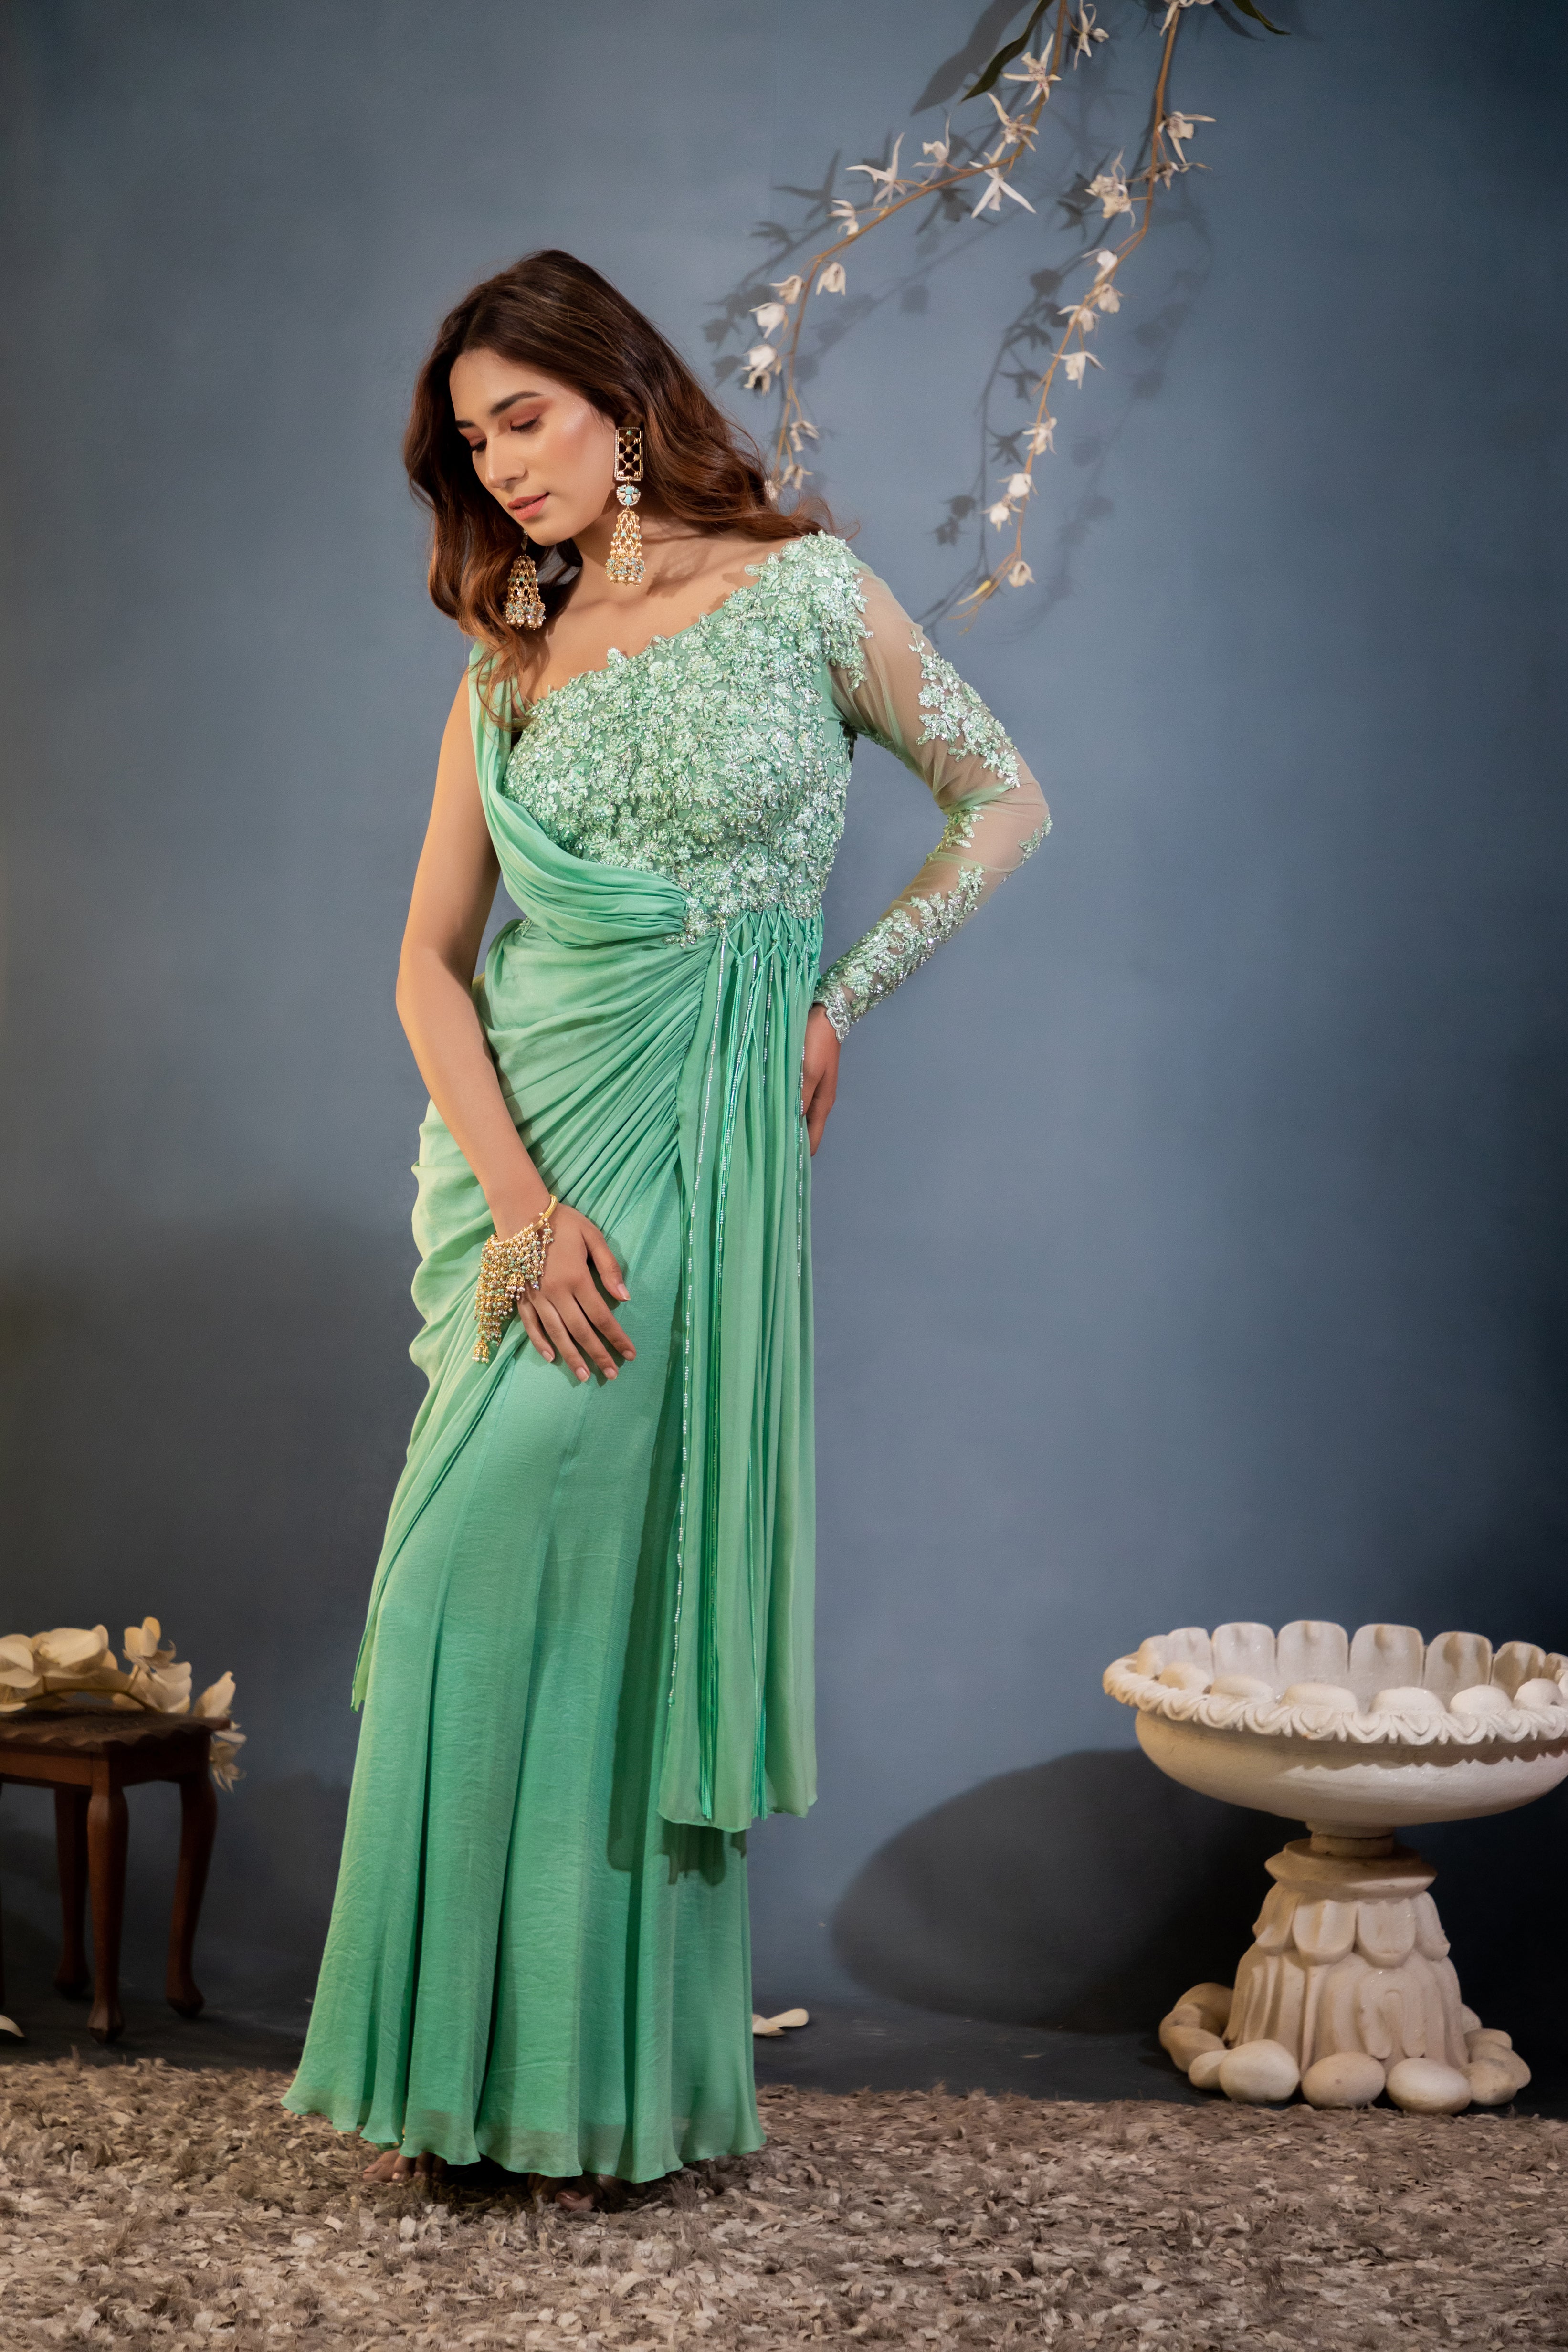 asian saree gown dress | eBay